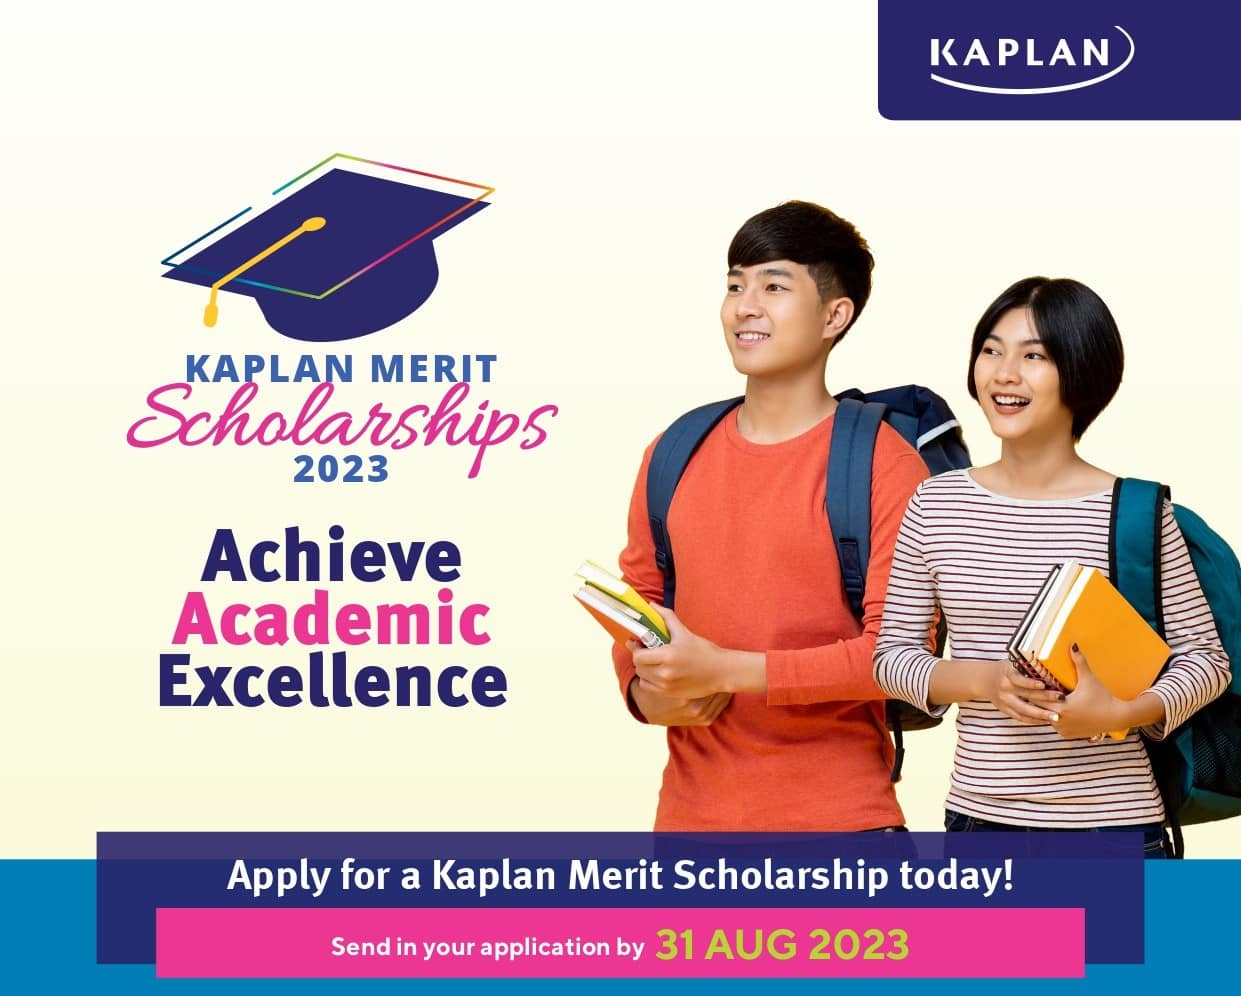 hoc bong kaplan singapore 2023 - Tuần lễ Du học Kaplan: Tốt nghiệp lớp 9, có bằng cử nhân sau 26 tháng